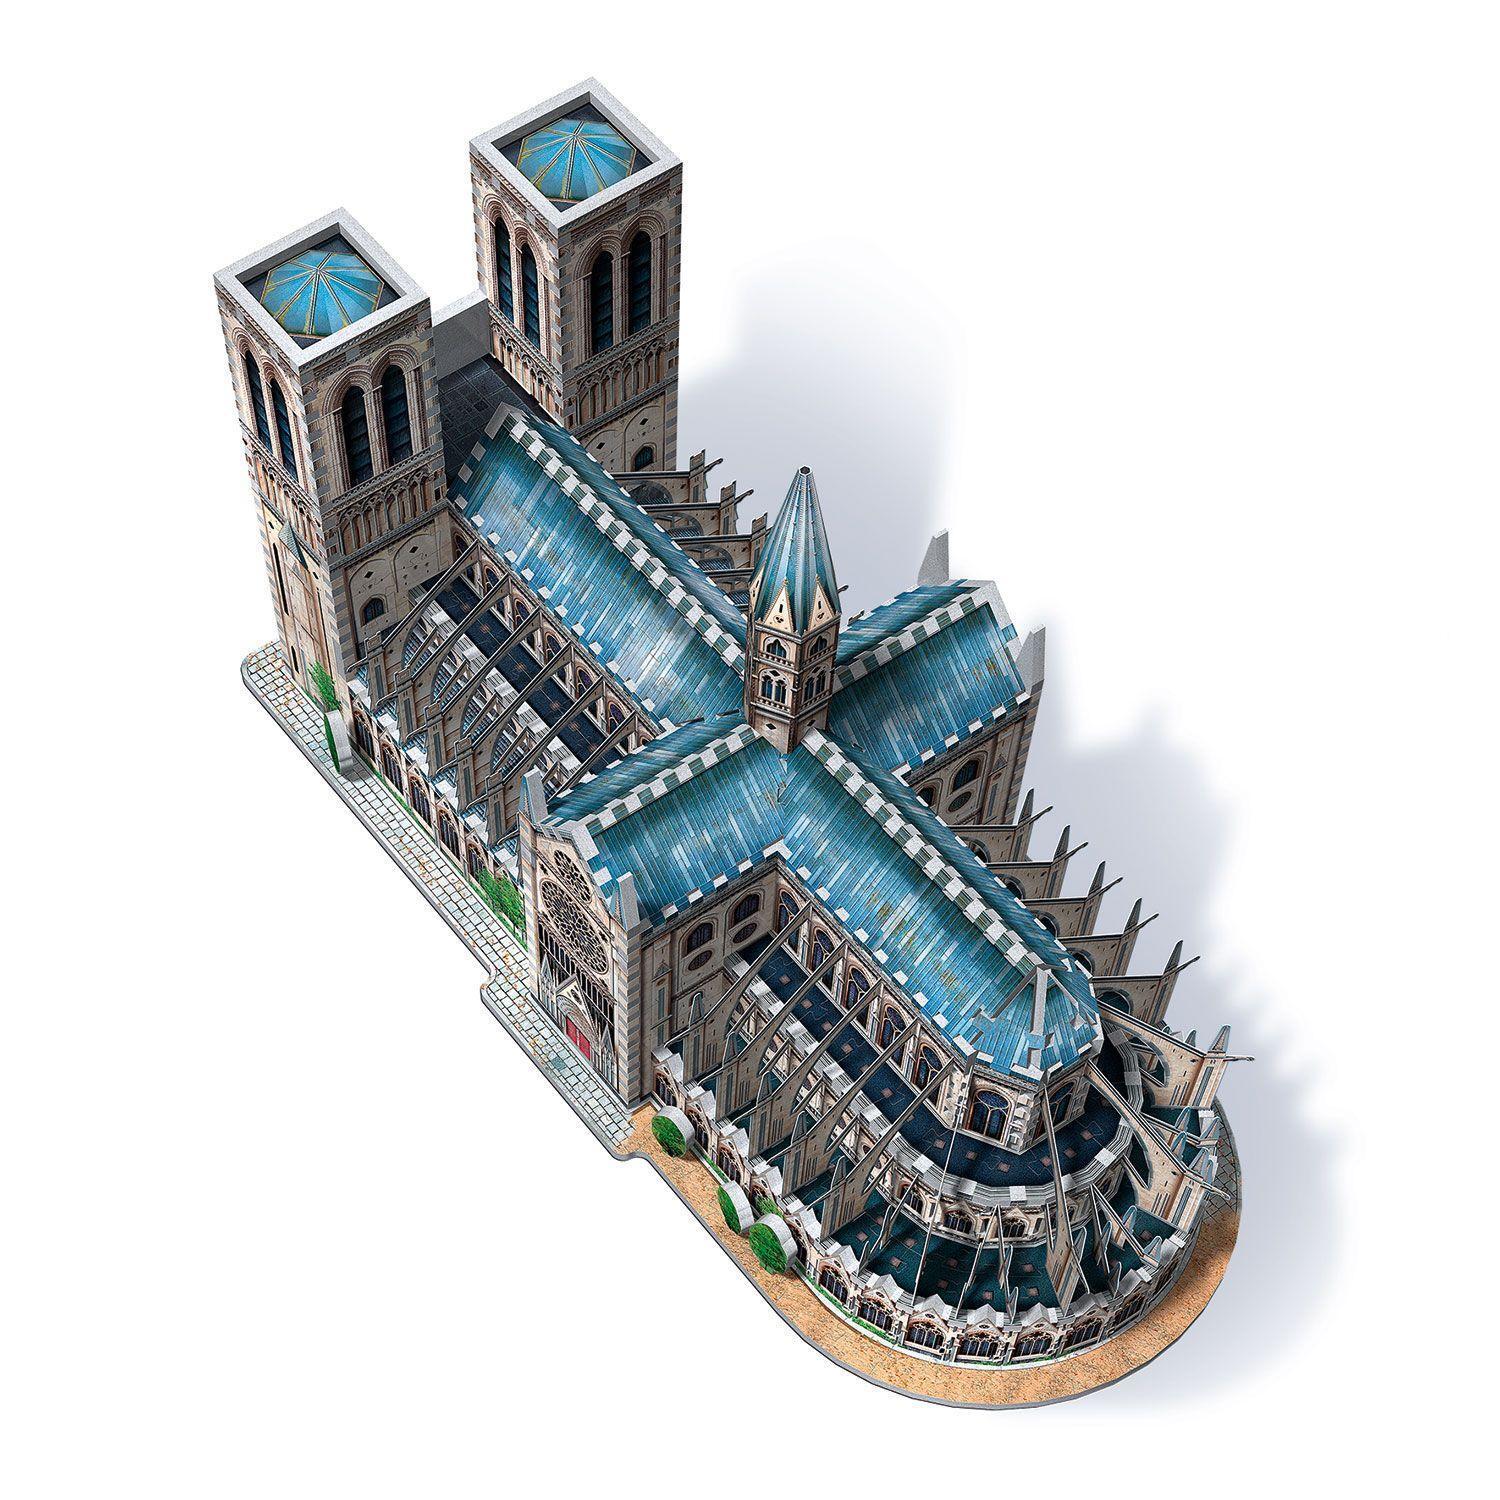 Bild: 665541020209 | Notre-Dame de Paris. 3D-PUZZLE (830 Teile) | 3D-PUZZLE | Spiel | 2020